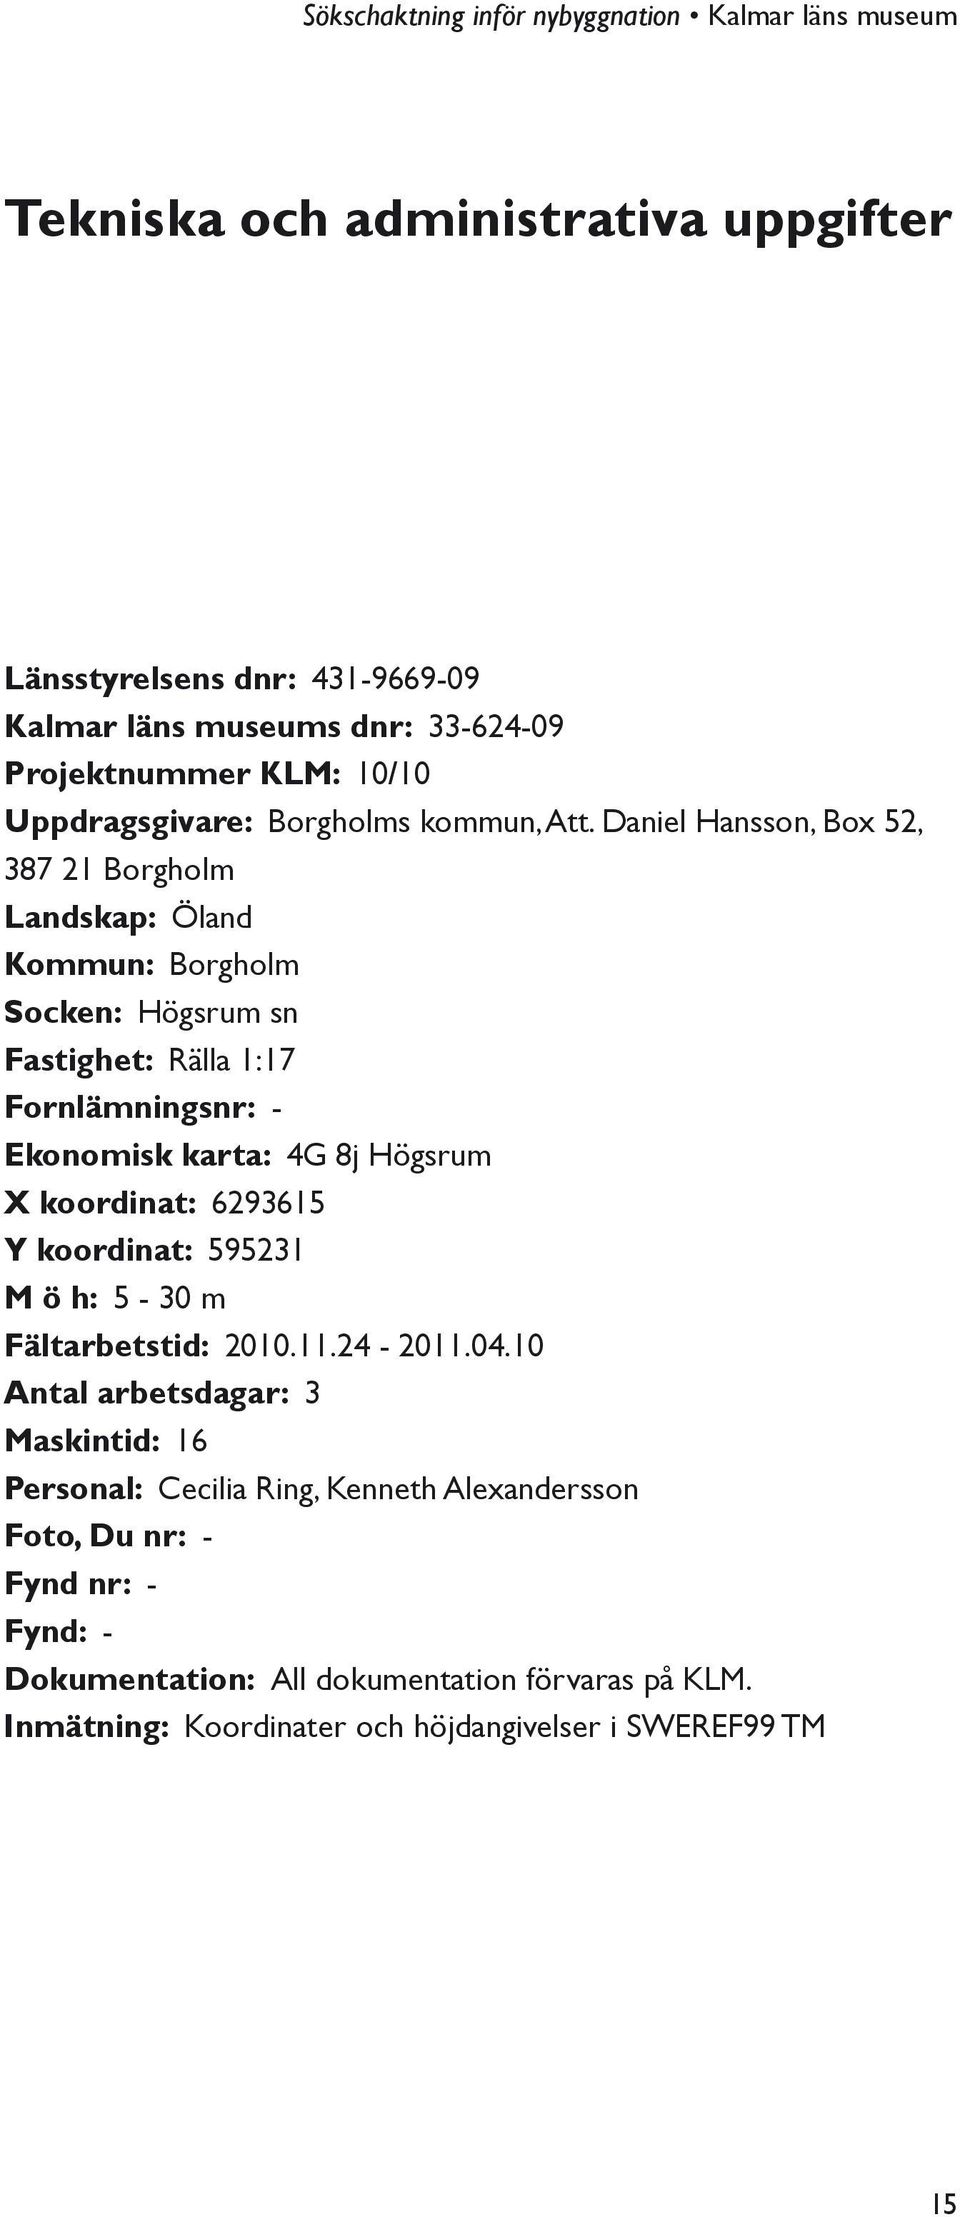 Daniel Hansson, Box 52, 387 21 Borgholm Landskap: Öland Kommun: Borgholm Socken: Högsrum sn Fastighet: Rälla 1:17 Fornlämningsnr: - Ekonomisk karta: 4G 8j